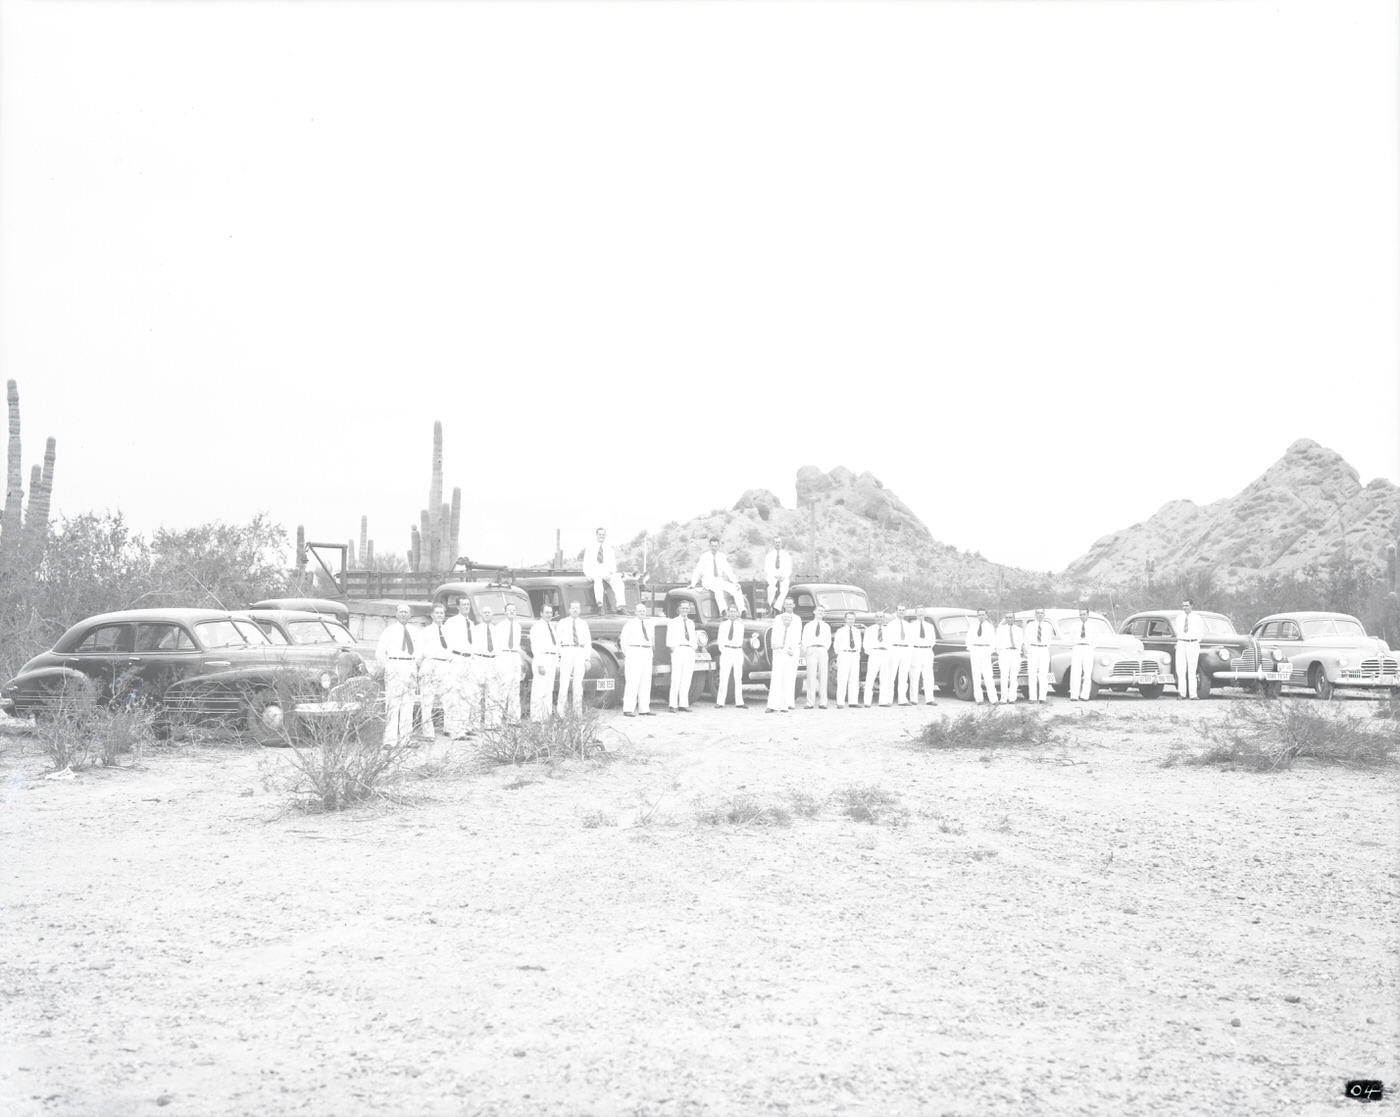 U. S. Tires Test Fleet and Drivers in Desert, 1943